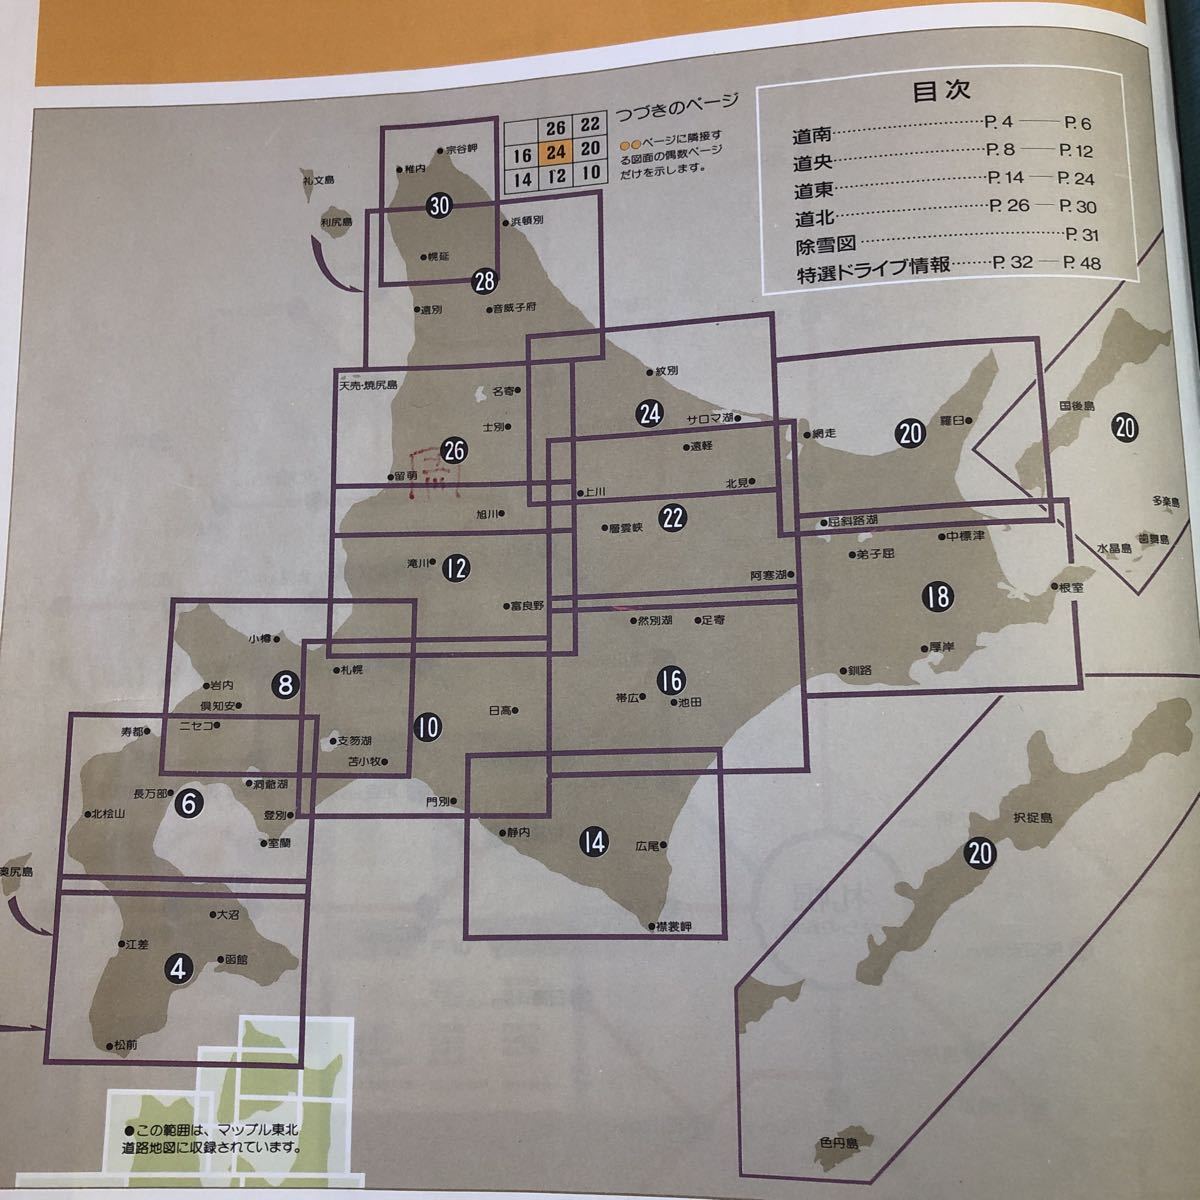 S6d-017 Mapple Hokkaido карта дорог 1:250,000 1993 год 1 месяц no. 24 версия выпуск . документ фирма карта дорога путеводитель Hokkaido Sapporo маленький . день высота Muroran Hakodate Кусиро город . внутри 